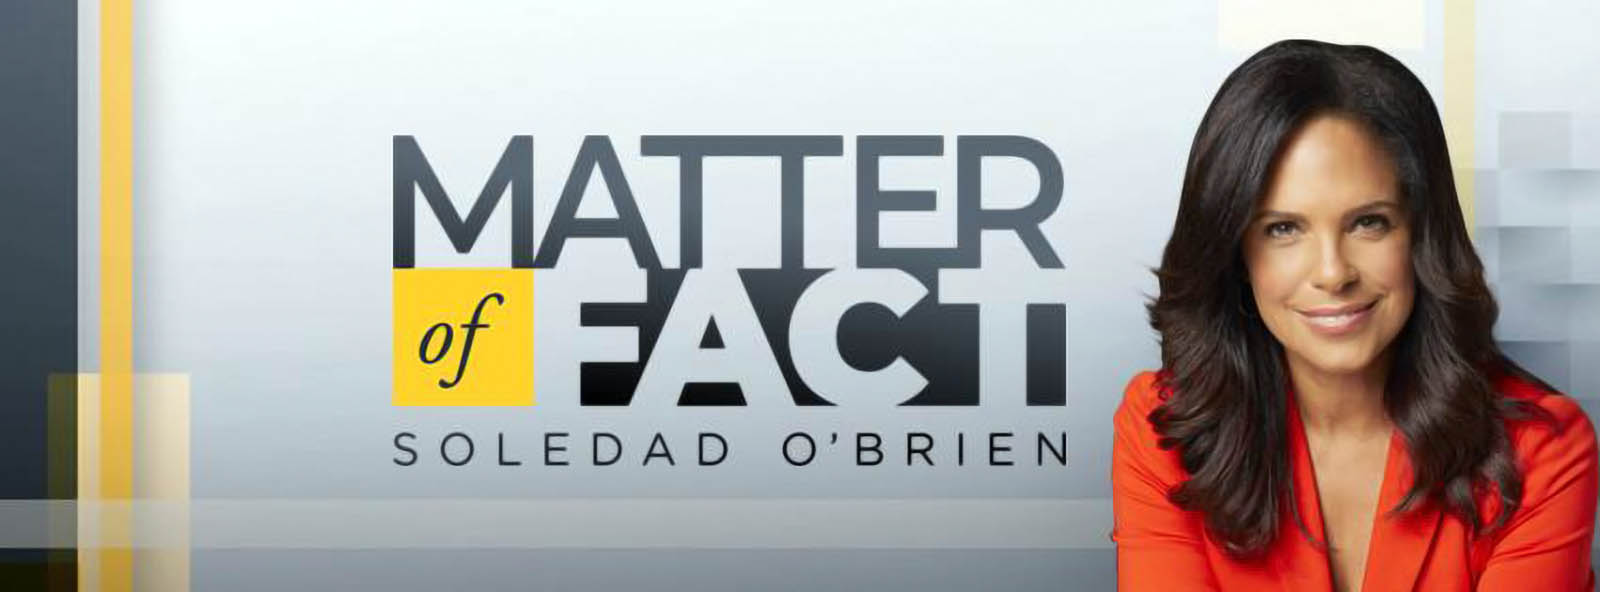 Matter of Fact